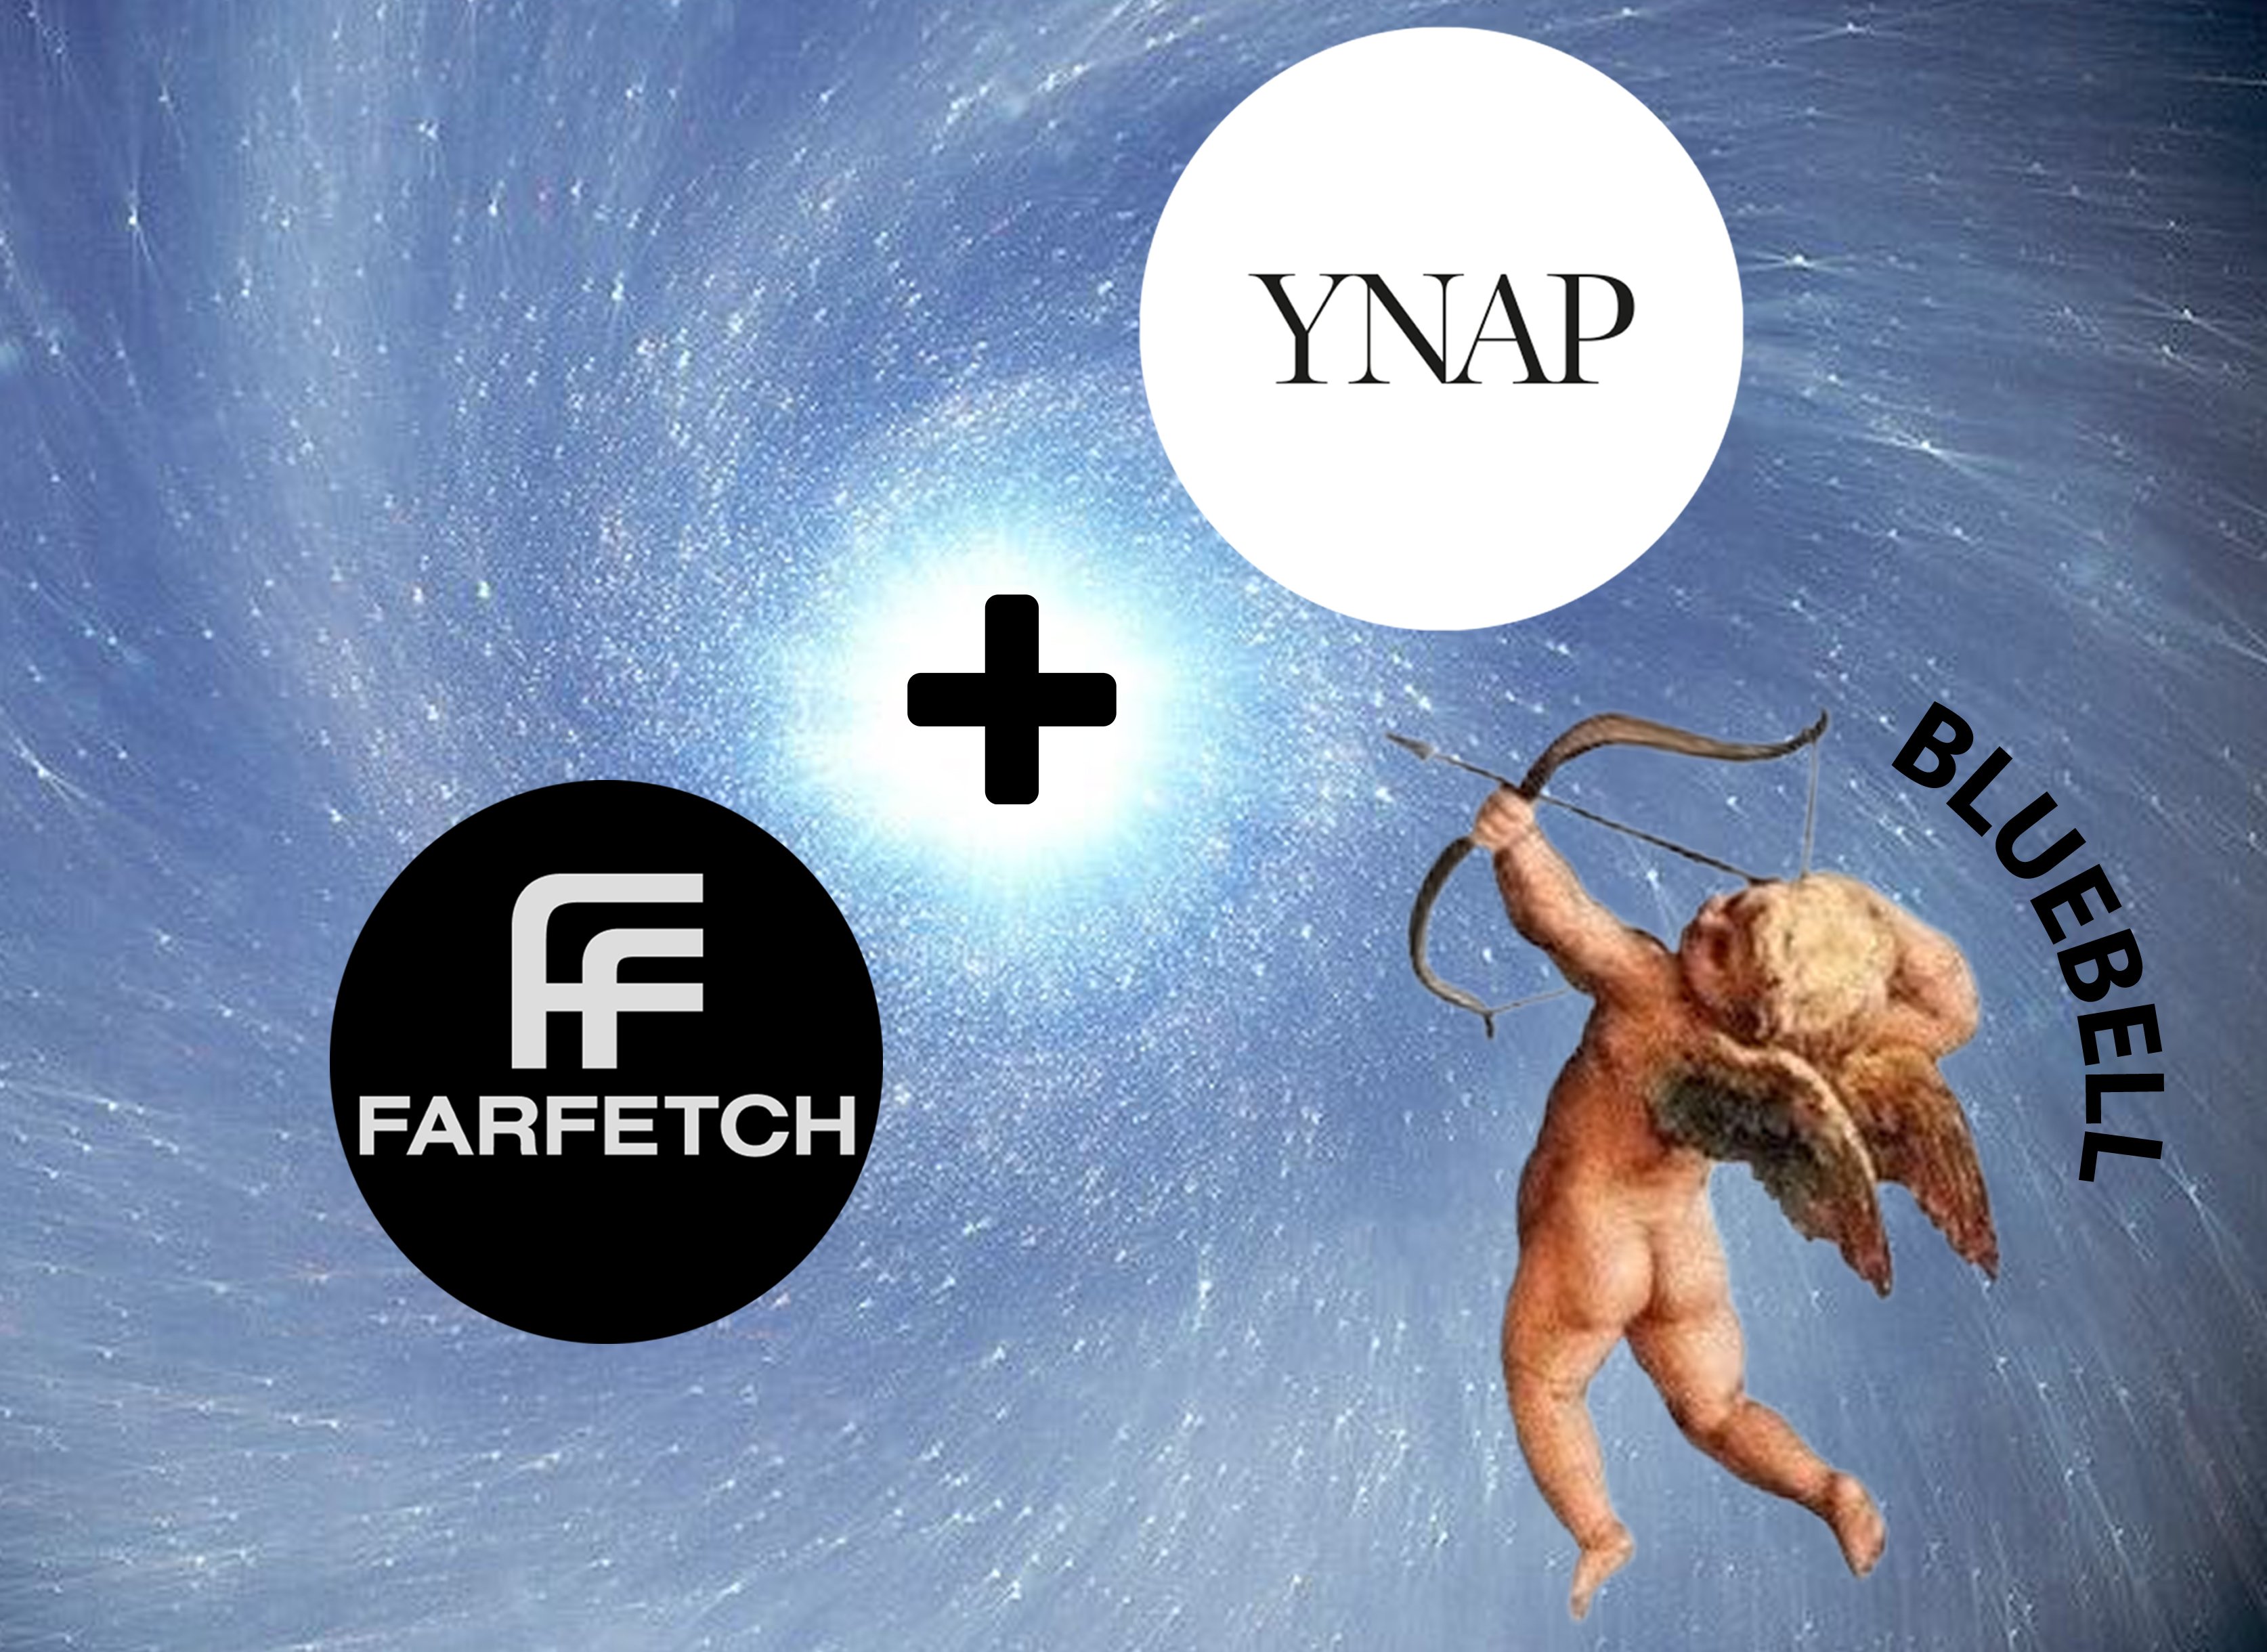 Farfetch close to a deal on YNAP